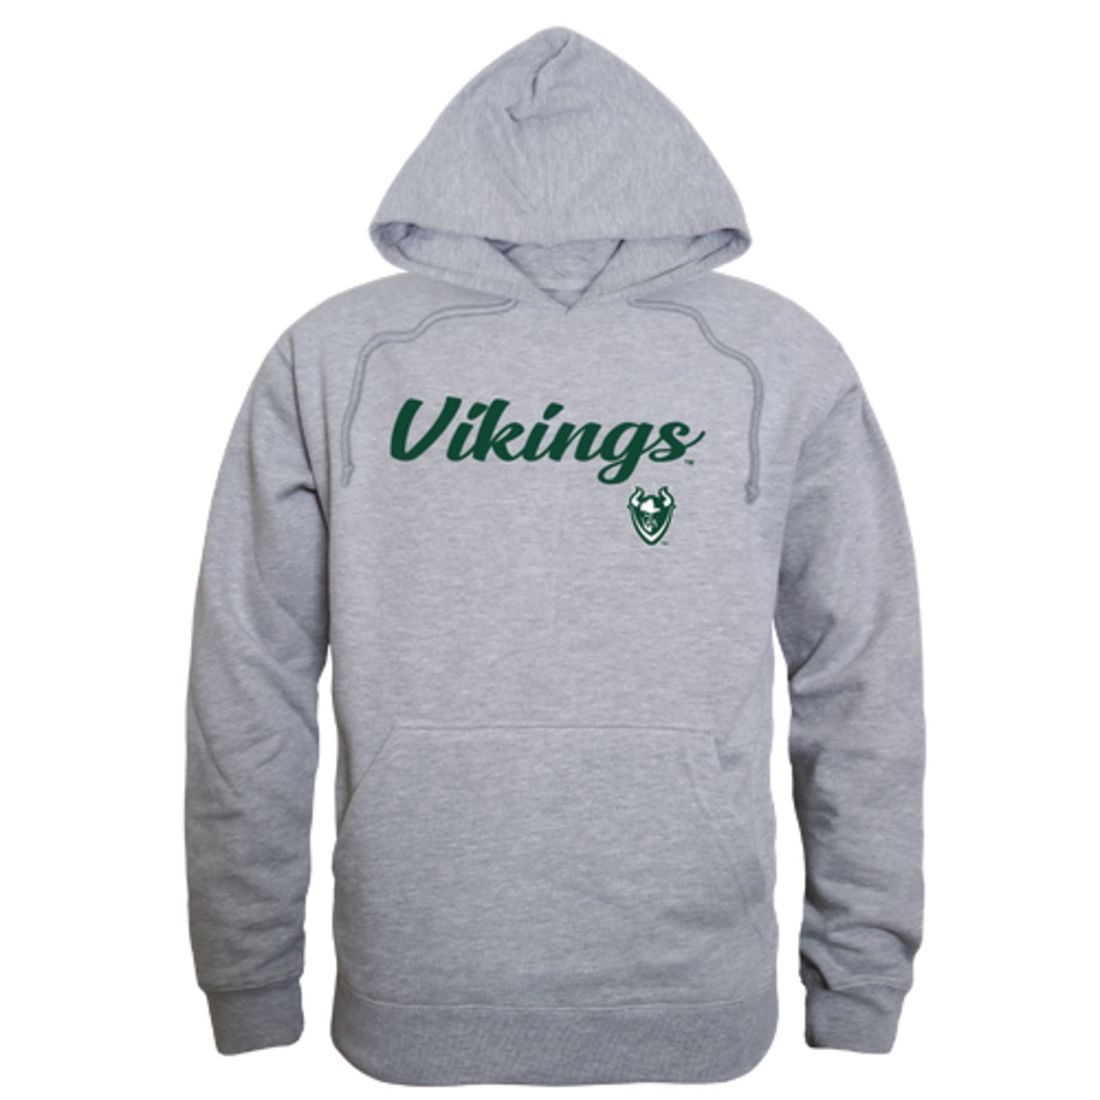 PSU Portland State University Vikings Mens Script Hoodie Sweatshirt Black-Campus-Wardrobe